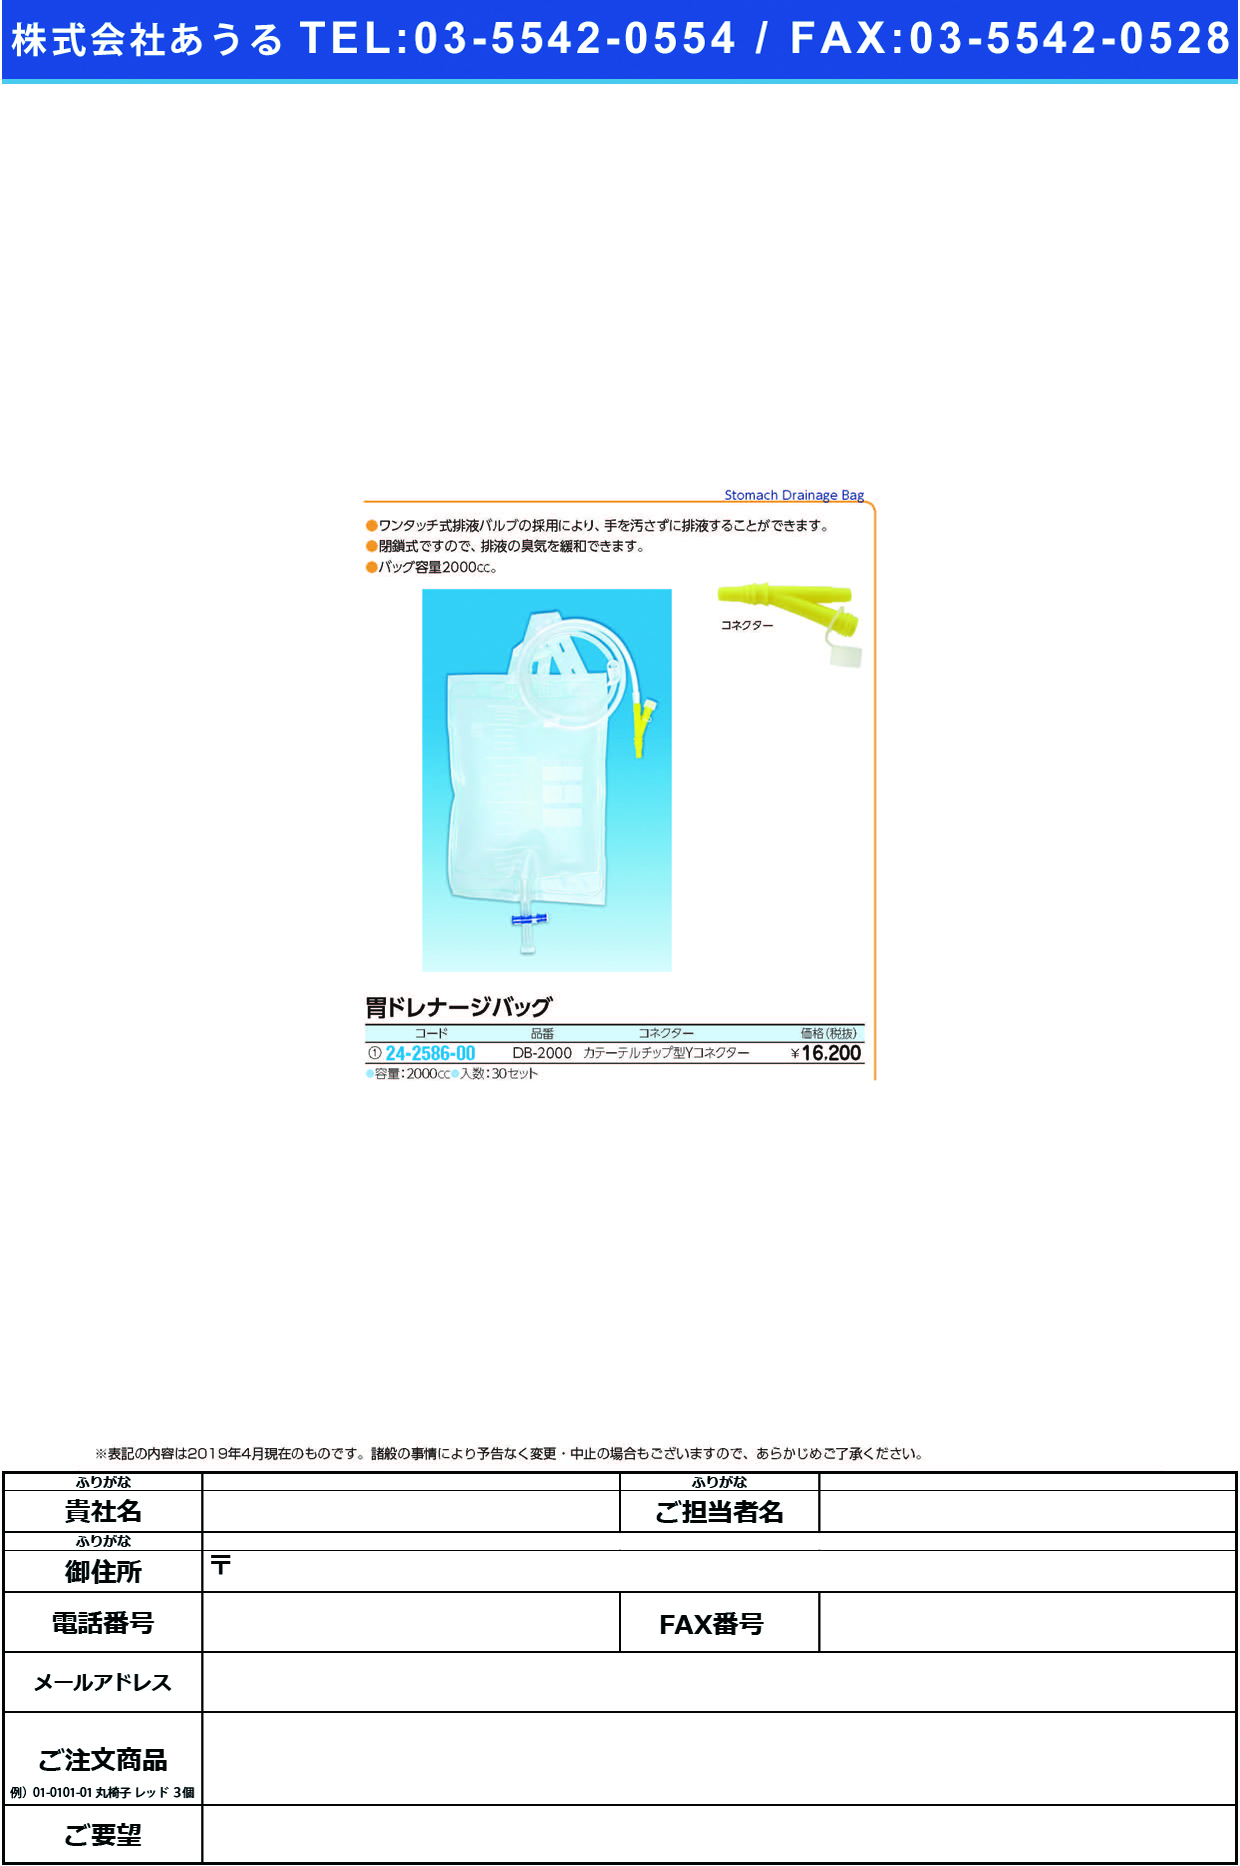 (24-2586-00)胃ドレナージバッグ（カテーテルＹコネ DB-2000(2000CC)30ｾｯﾄ ｲﾄﾞﾚﾅｰｼﾞﾊﾞｯｸﾞｼﾛｺﾈｸﾀｰ【1箱単位】【2019年カタログ商品】